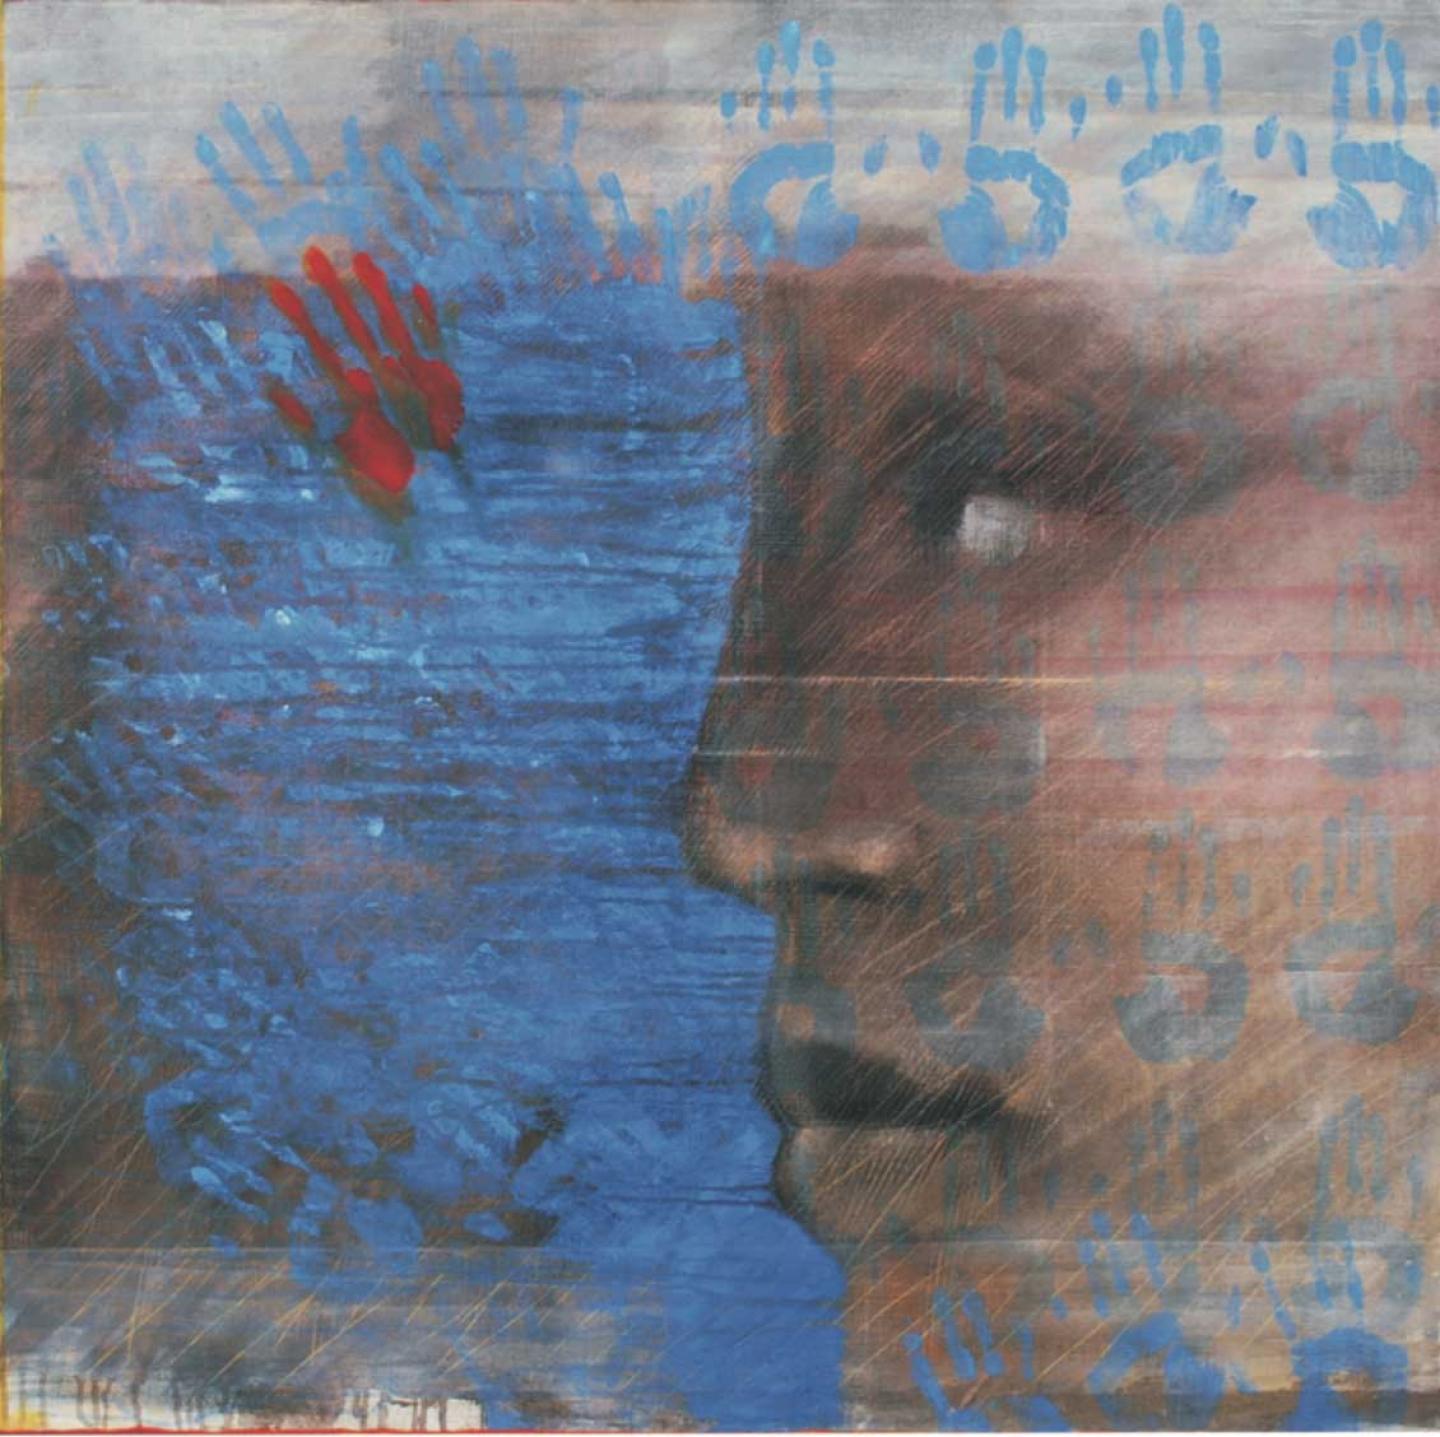 mains d’oeuvre - 2008 - 100 x 100 cm - acrylique, encre et pigment sur lin